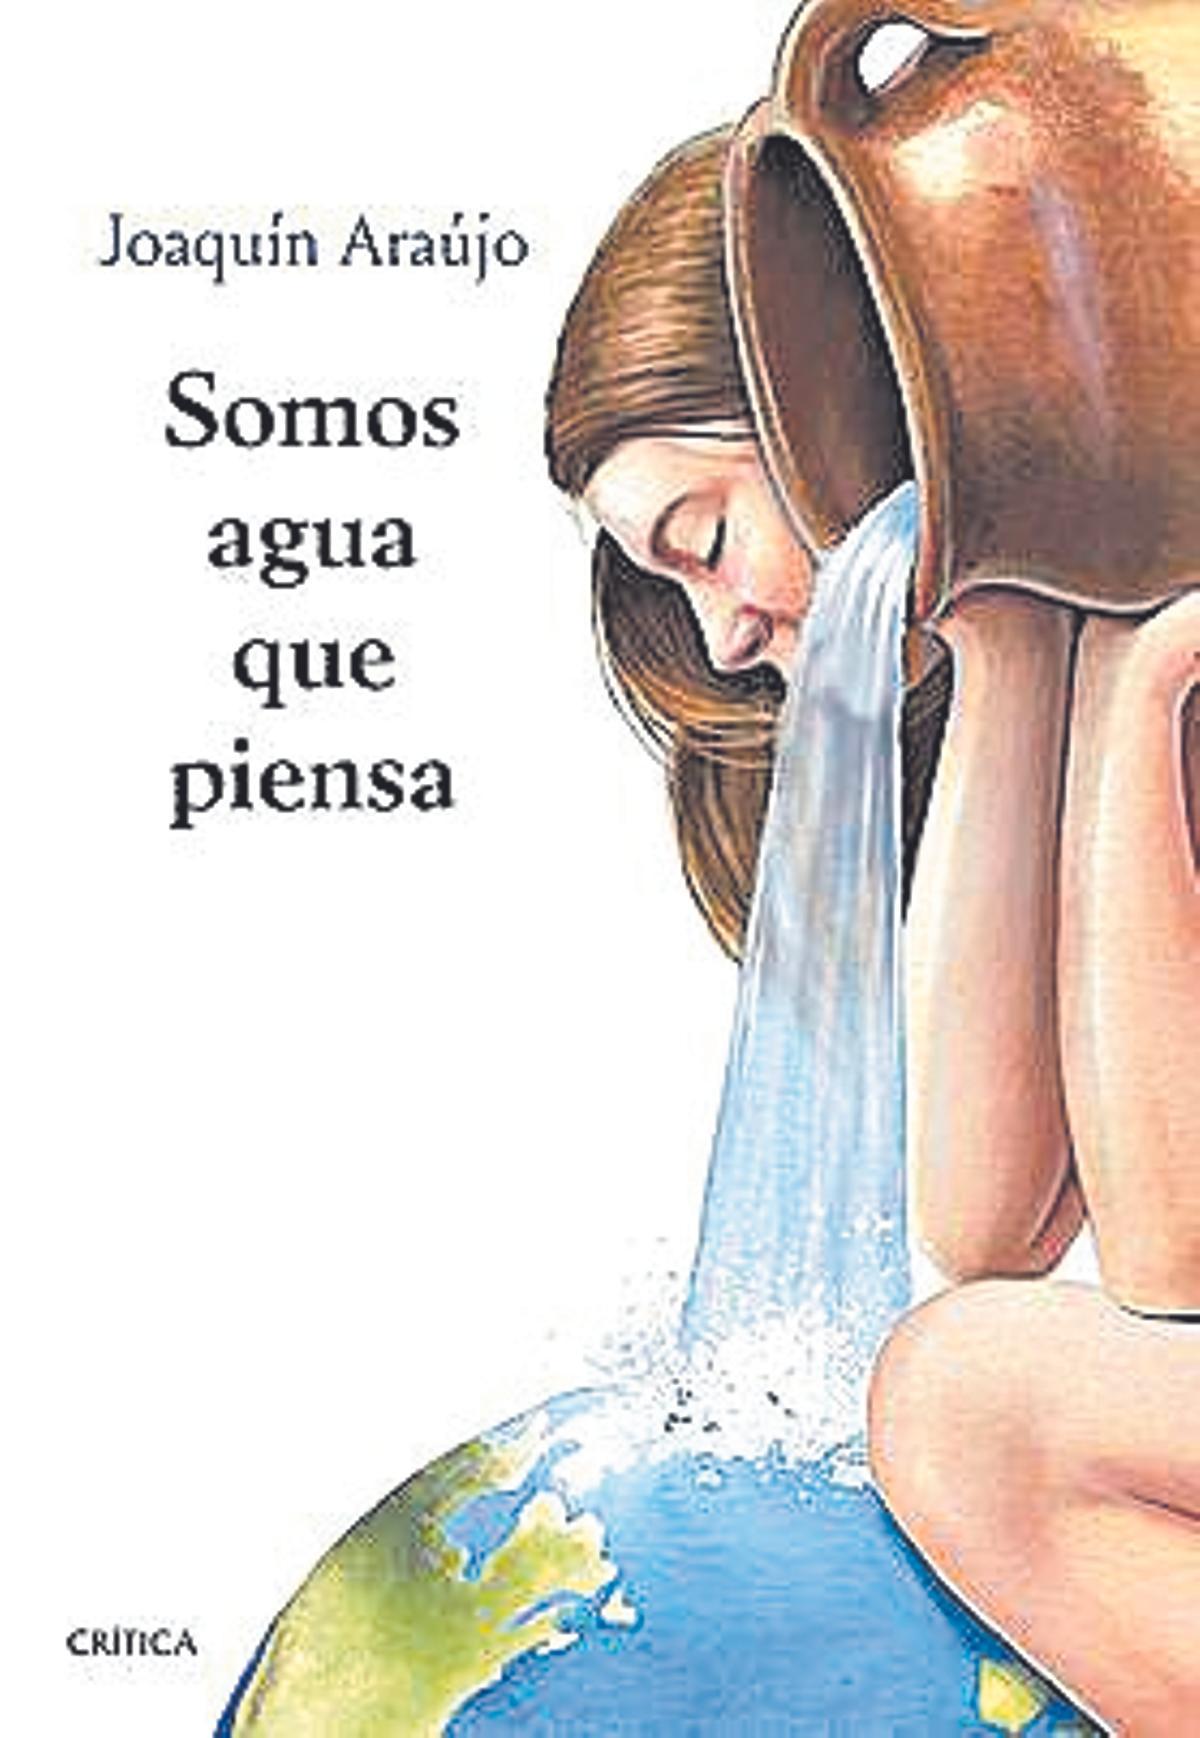 Portada del libro: Somos agua que piensa de Joaquín Araújo.